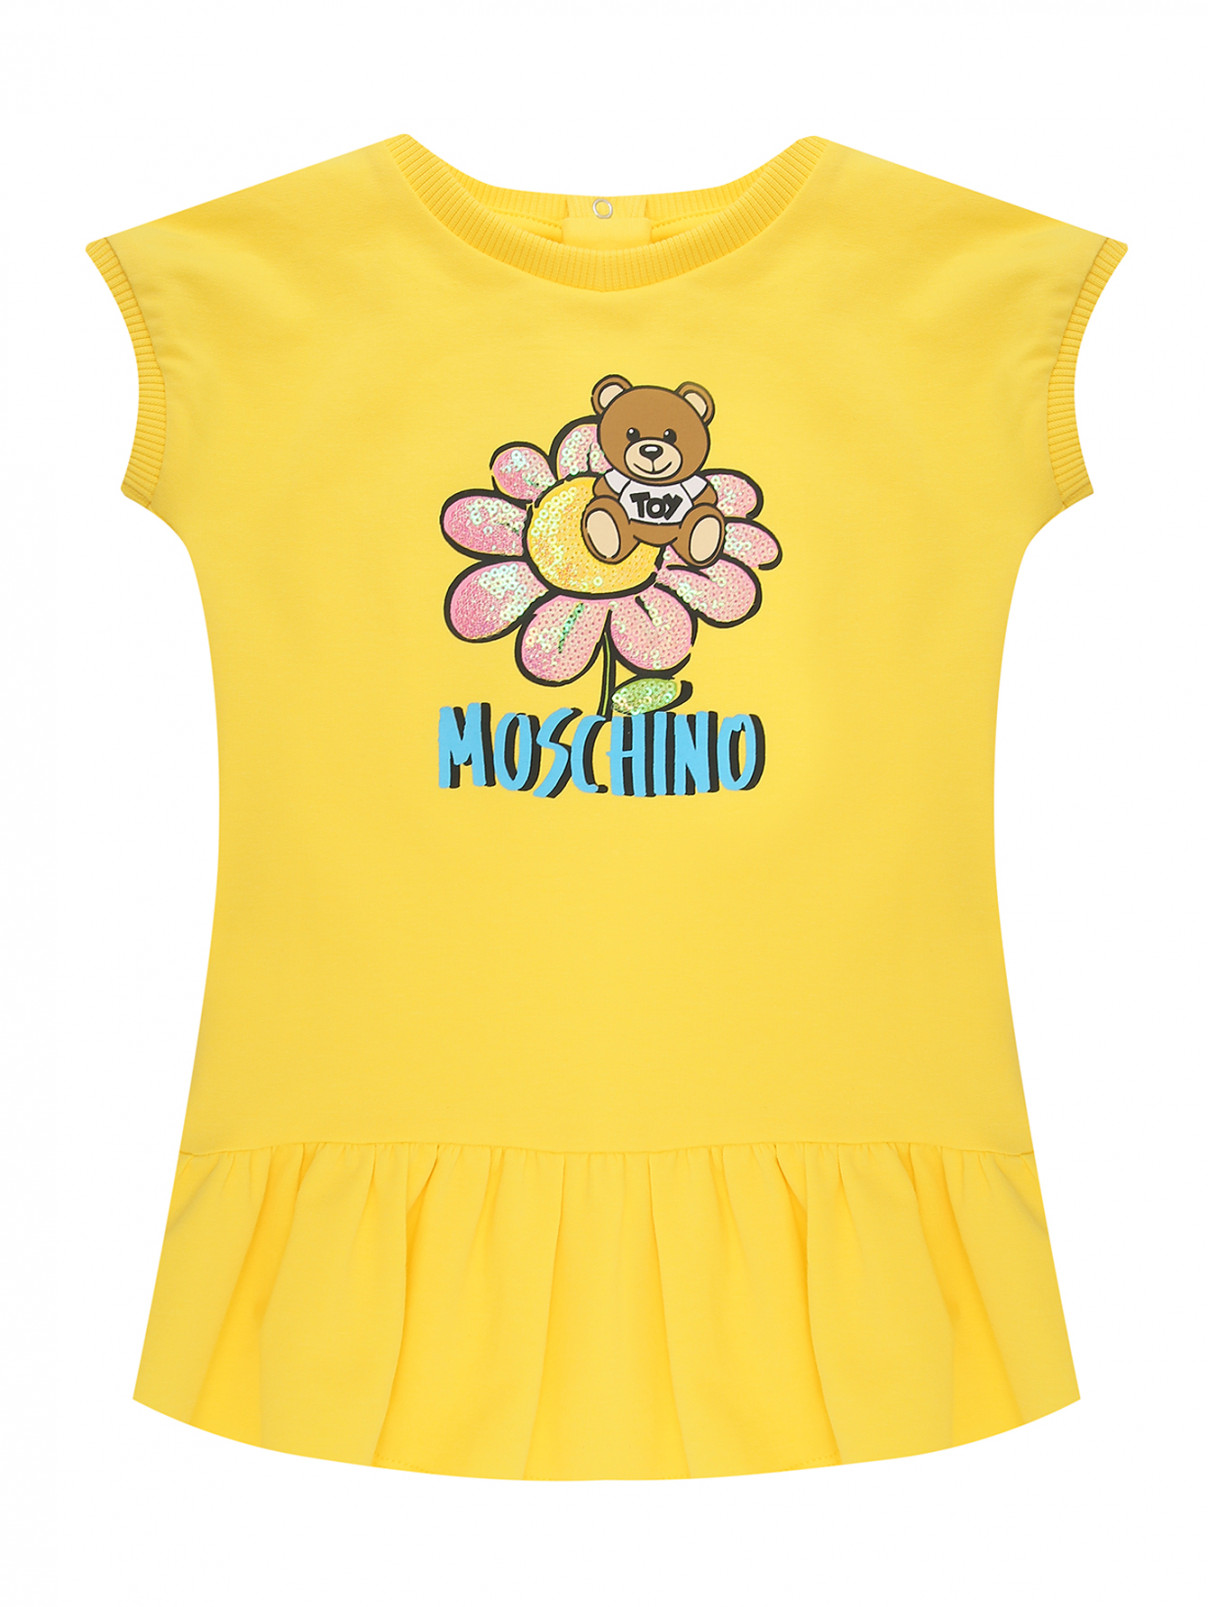 Платье из трикотажа с принтом Moschino  –  Общий вид  – Цвет:  Желтый